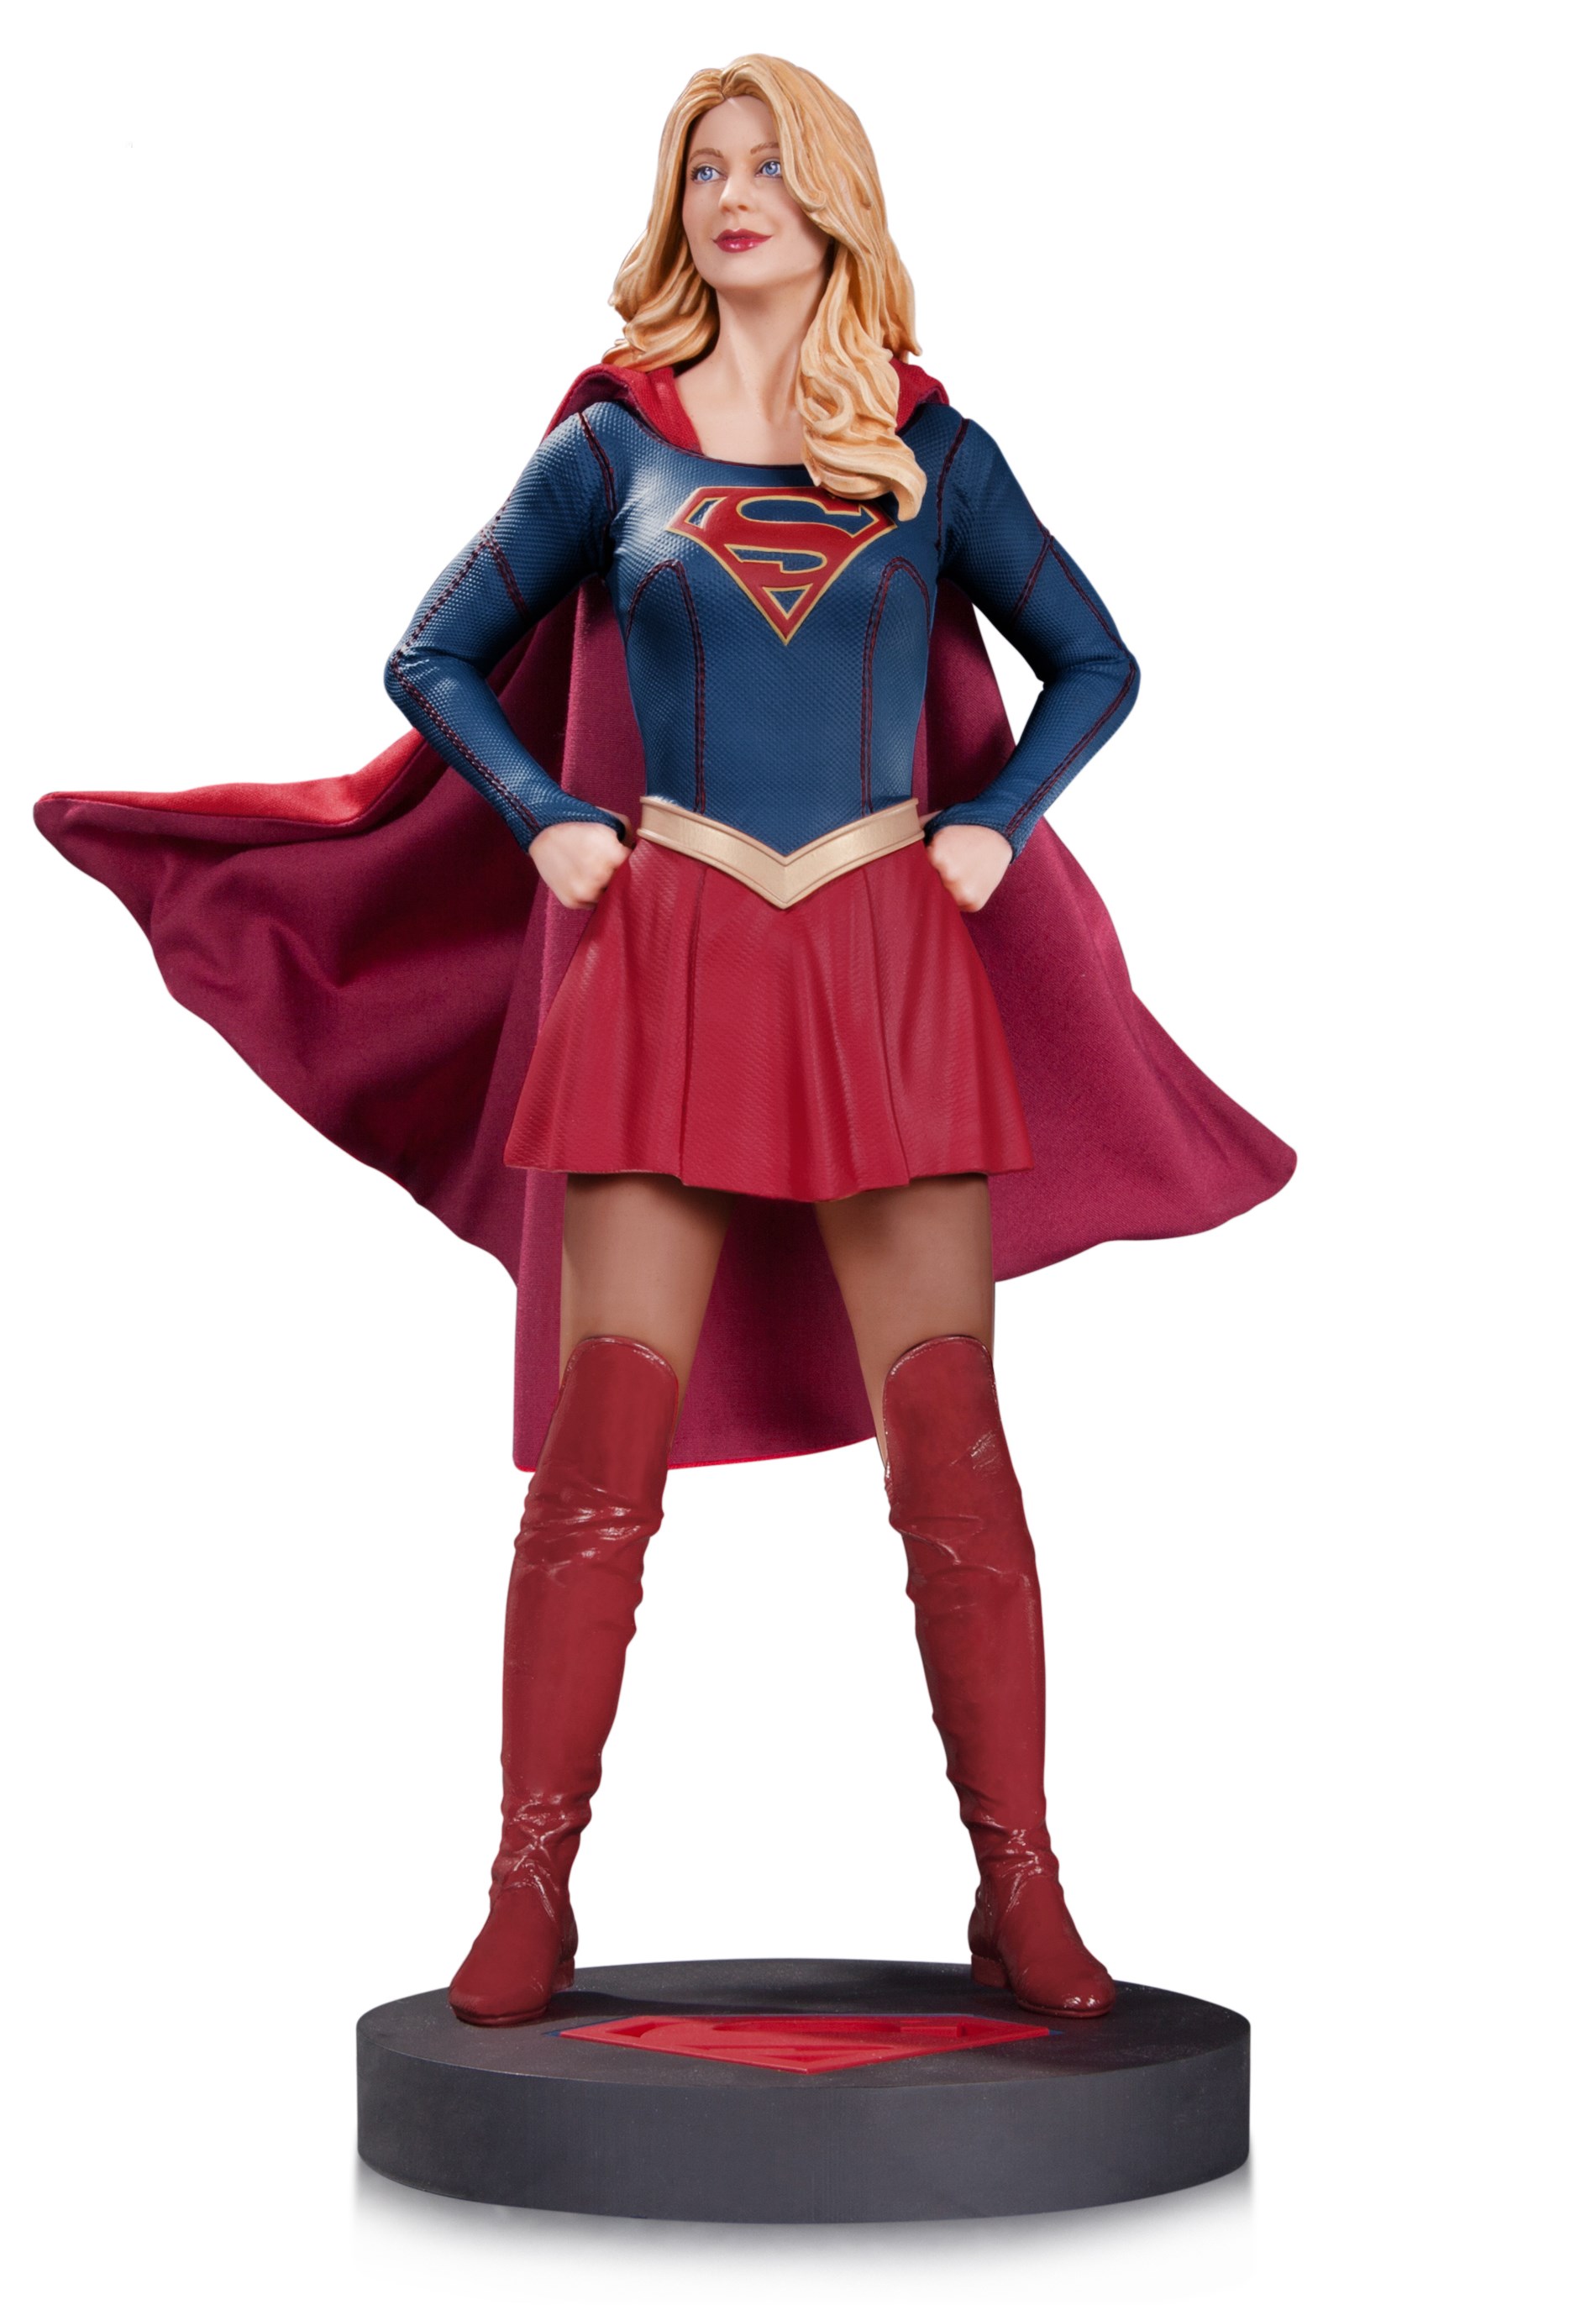 Supergirl TV Statue 2016